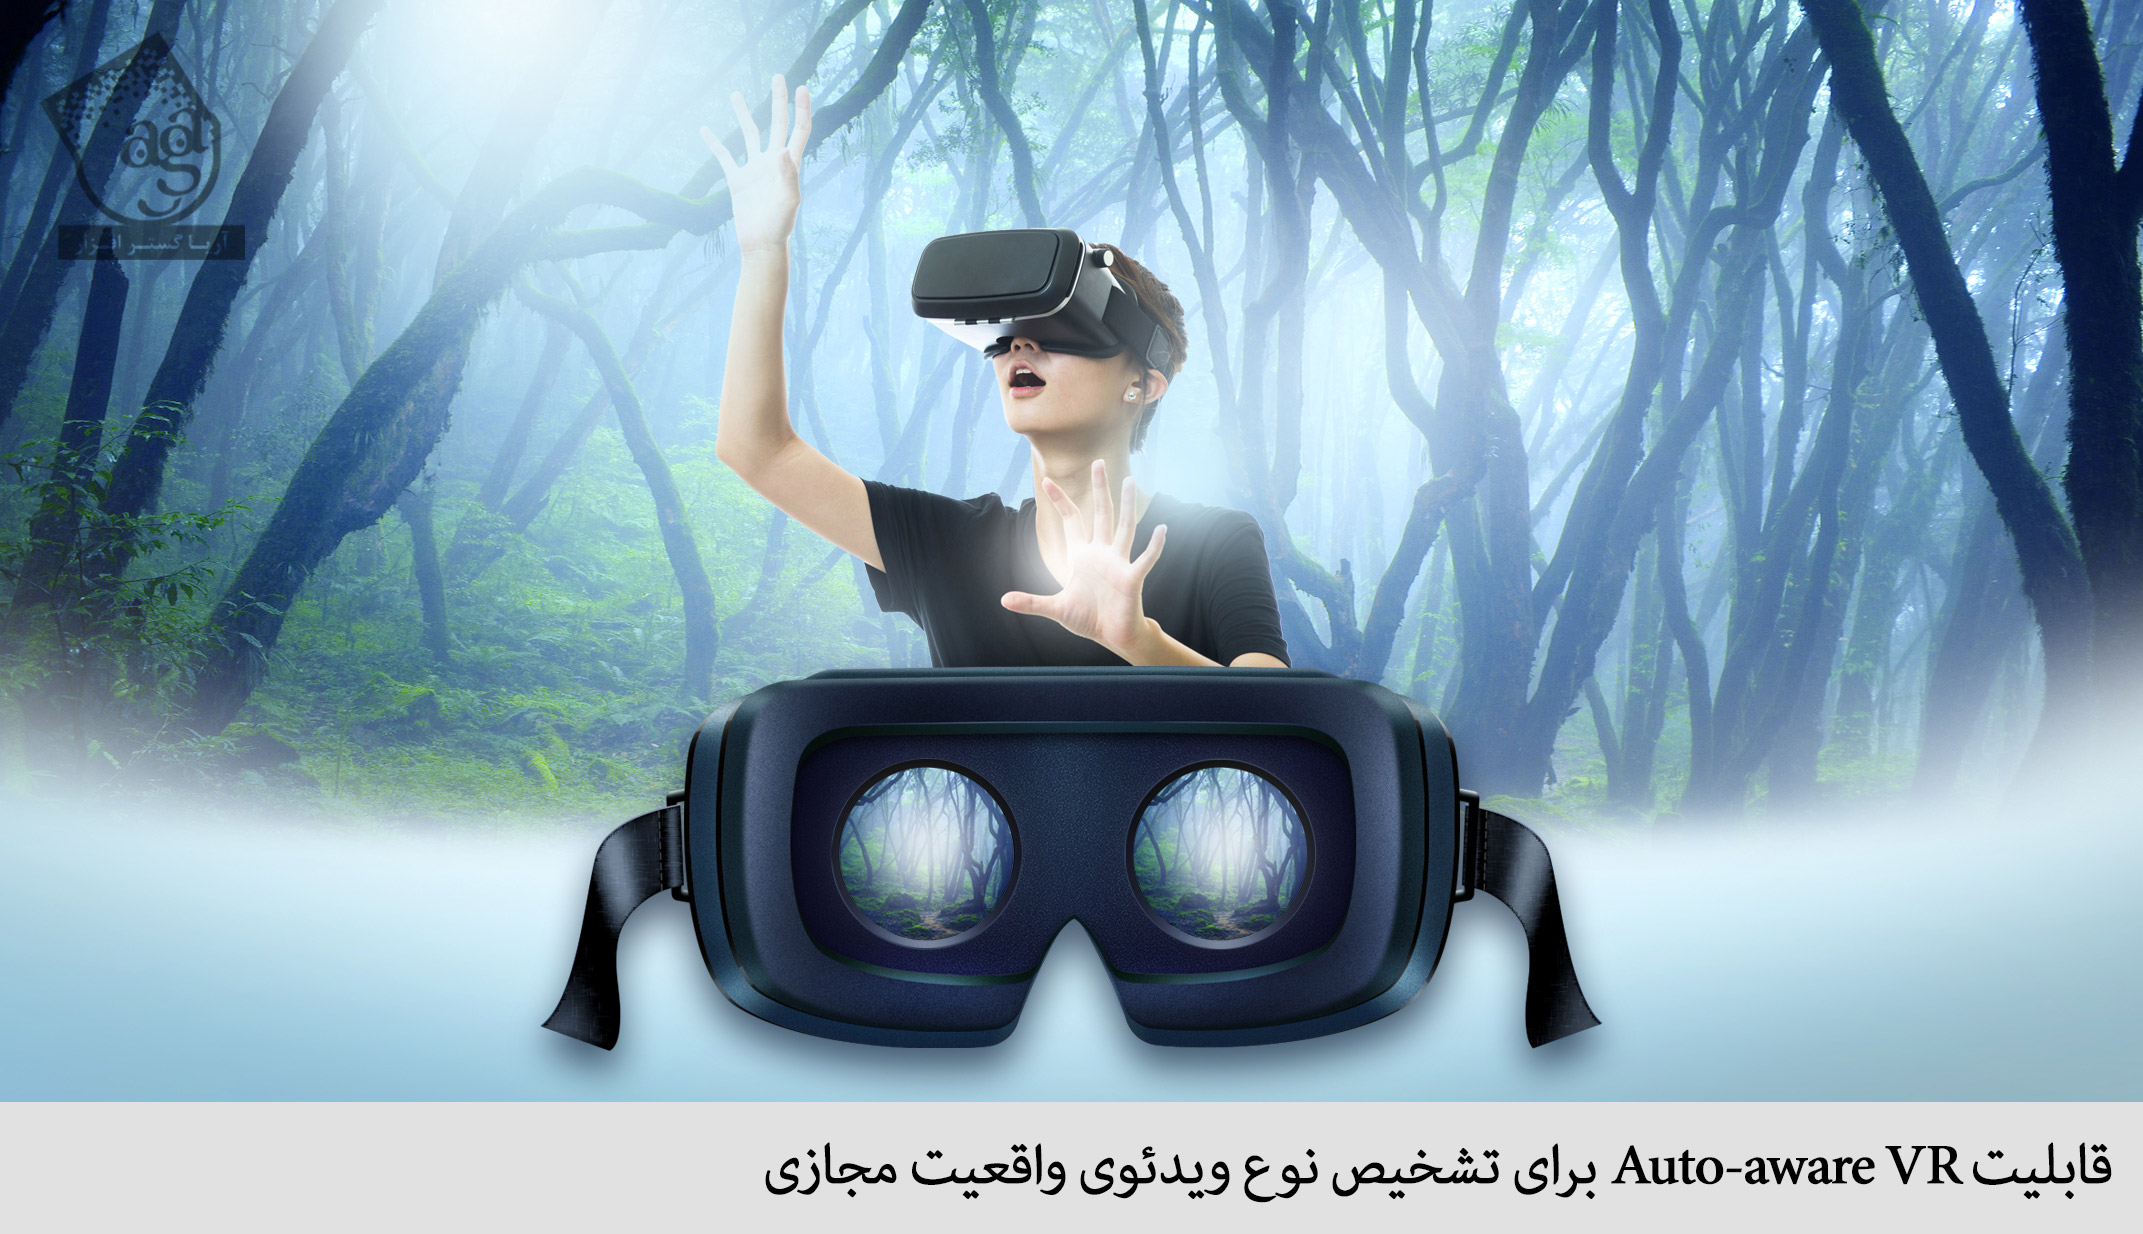 Vr тема. Виар очки вр360. Очки виртуальной реальности для детей. Очки виртуальной реальности на человеке. Вид в очках виртуальной реальности.